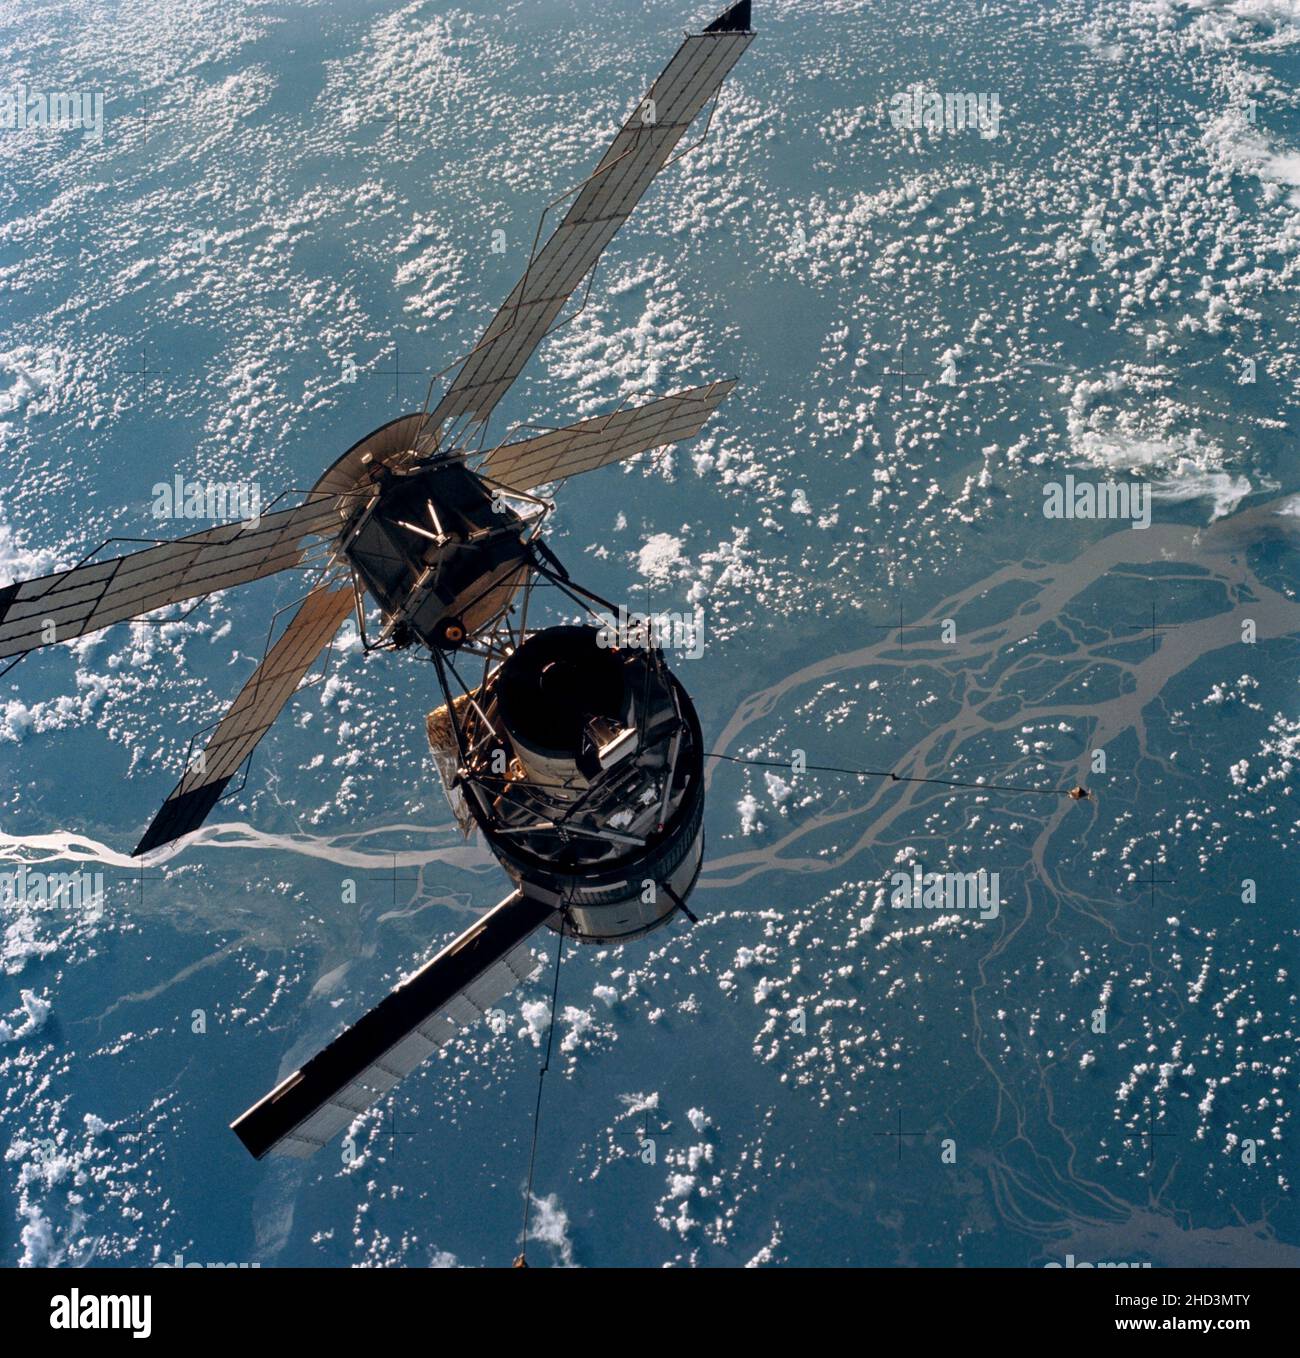 (28. Juli 1973) --- Nahaufnahme der Raumstation Skylab, fotografiert vor einem Erdhintergrund von den Kommandomodulen Skylab 3 (CSM) während der Stationsmanöver vor dem Andocken. An Bord des Kommandomoduls (CM) waren die Astronauten Alan L. Bean, Owen K. Garriott und Jack R. Lousma, die 59 Tage lang bei der Skylab-Raumstation in der Erdumlaufbahn blieben. Dieses Bild wurde mit einer handgedrehten 70mm Hasselblad Kamera mit einem 100mm Objektiv und EINEM SO-368 Ektachrome-Film mit mittlerer Geschwindigkeit aufgenommen. Beachten Sie den Flügel des Solararray-Systems auf dem Orbital Workshop (OWS), der erfolgreich eingesetzt wurde Stockfoto